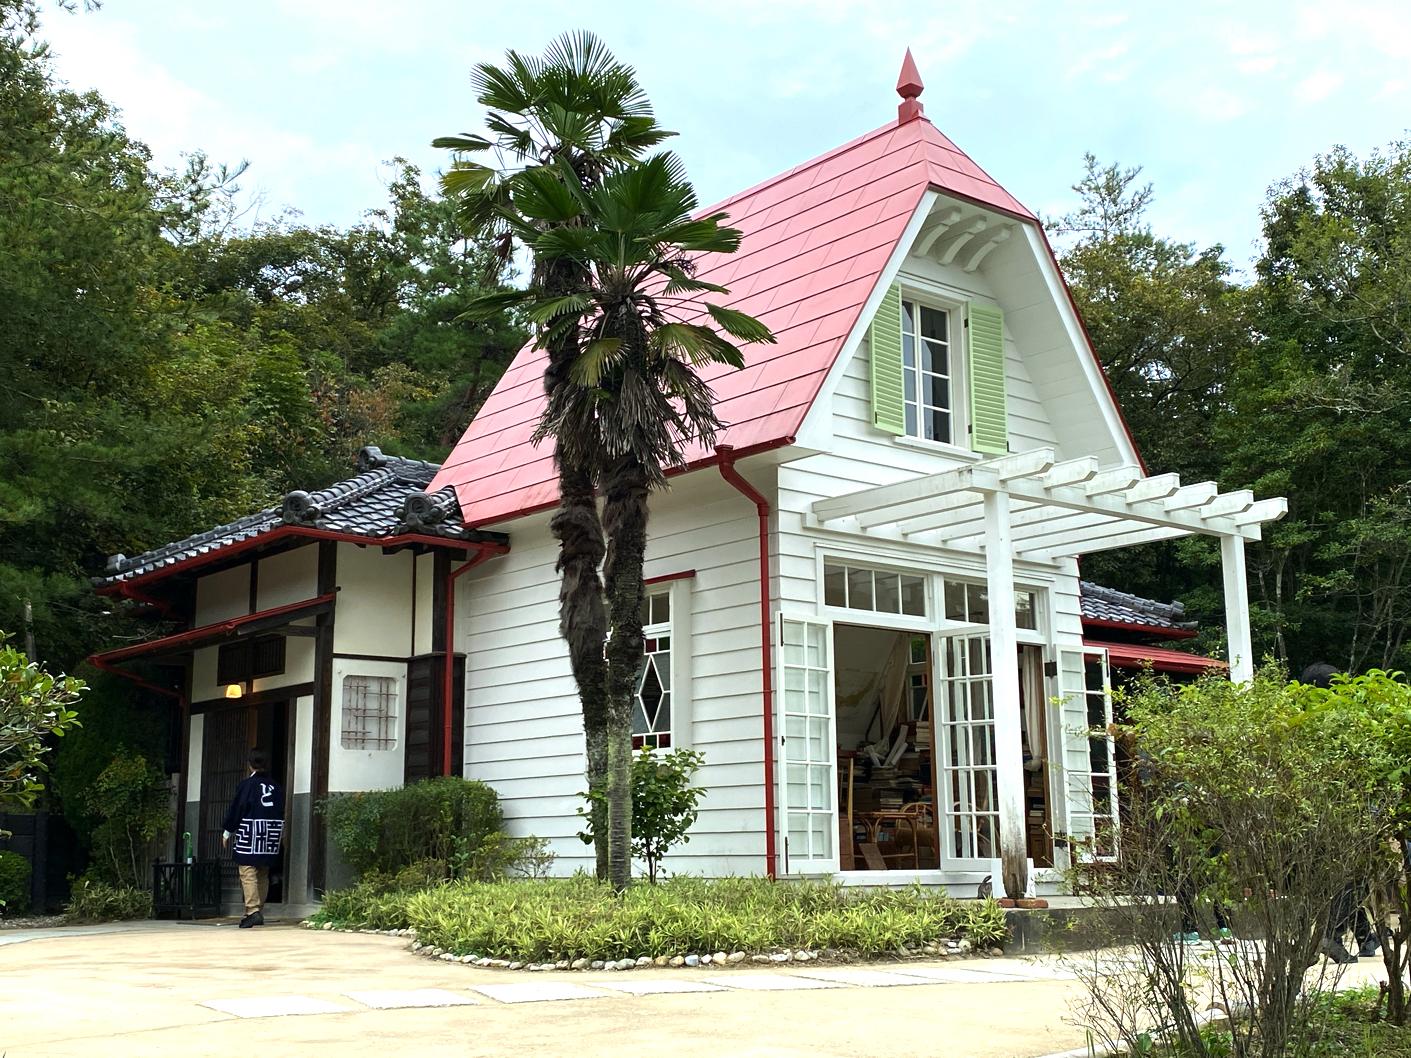 ジブリパーク｢サツキとメイの家｣に込められた日本の暮らしの歴史 